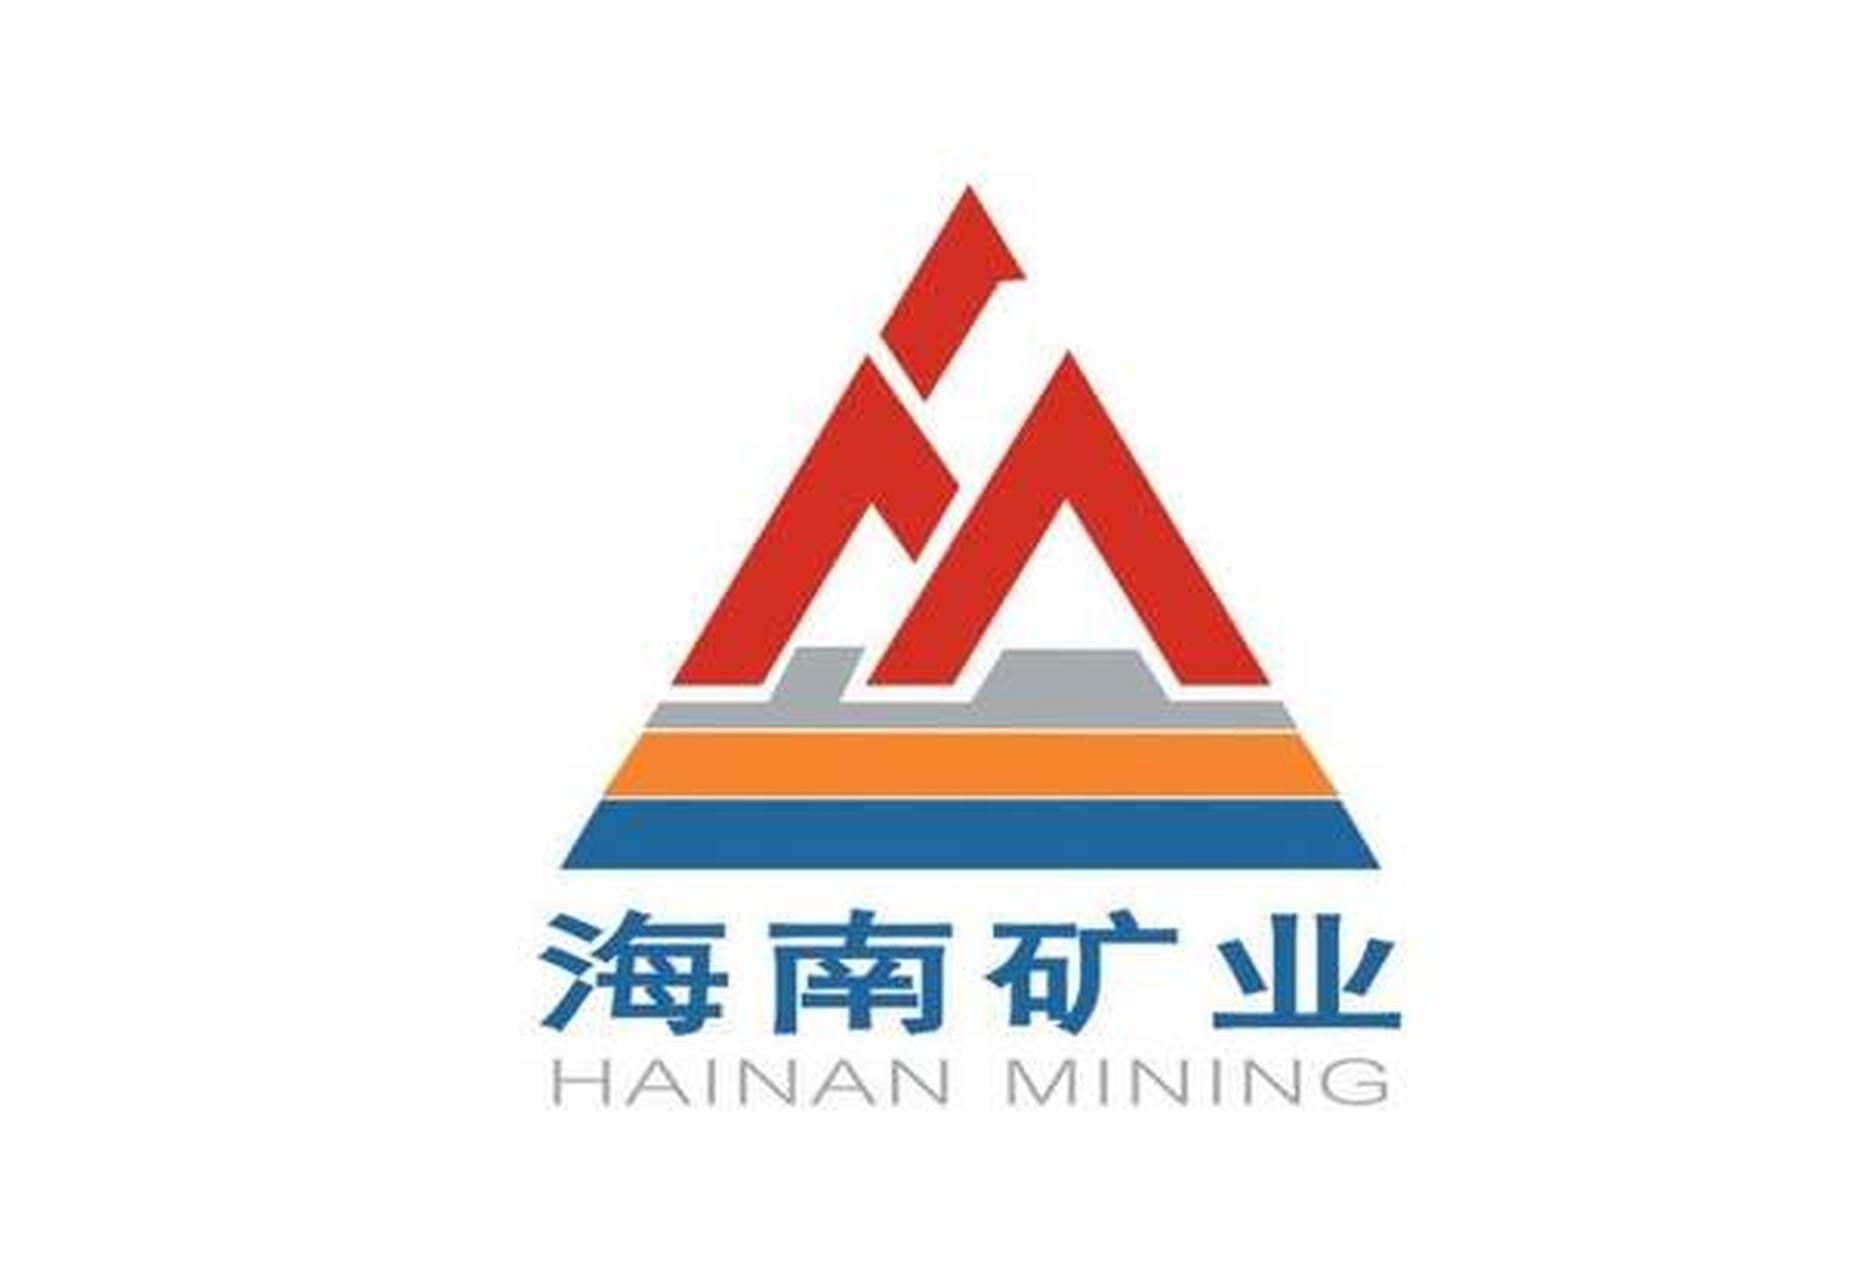 海南矿业公告,为确保公司经营业务的顺利开展,补充公司流动资金,现拟